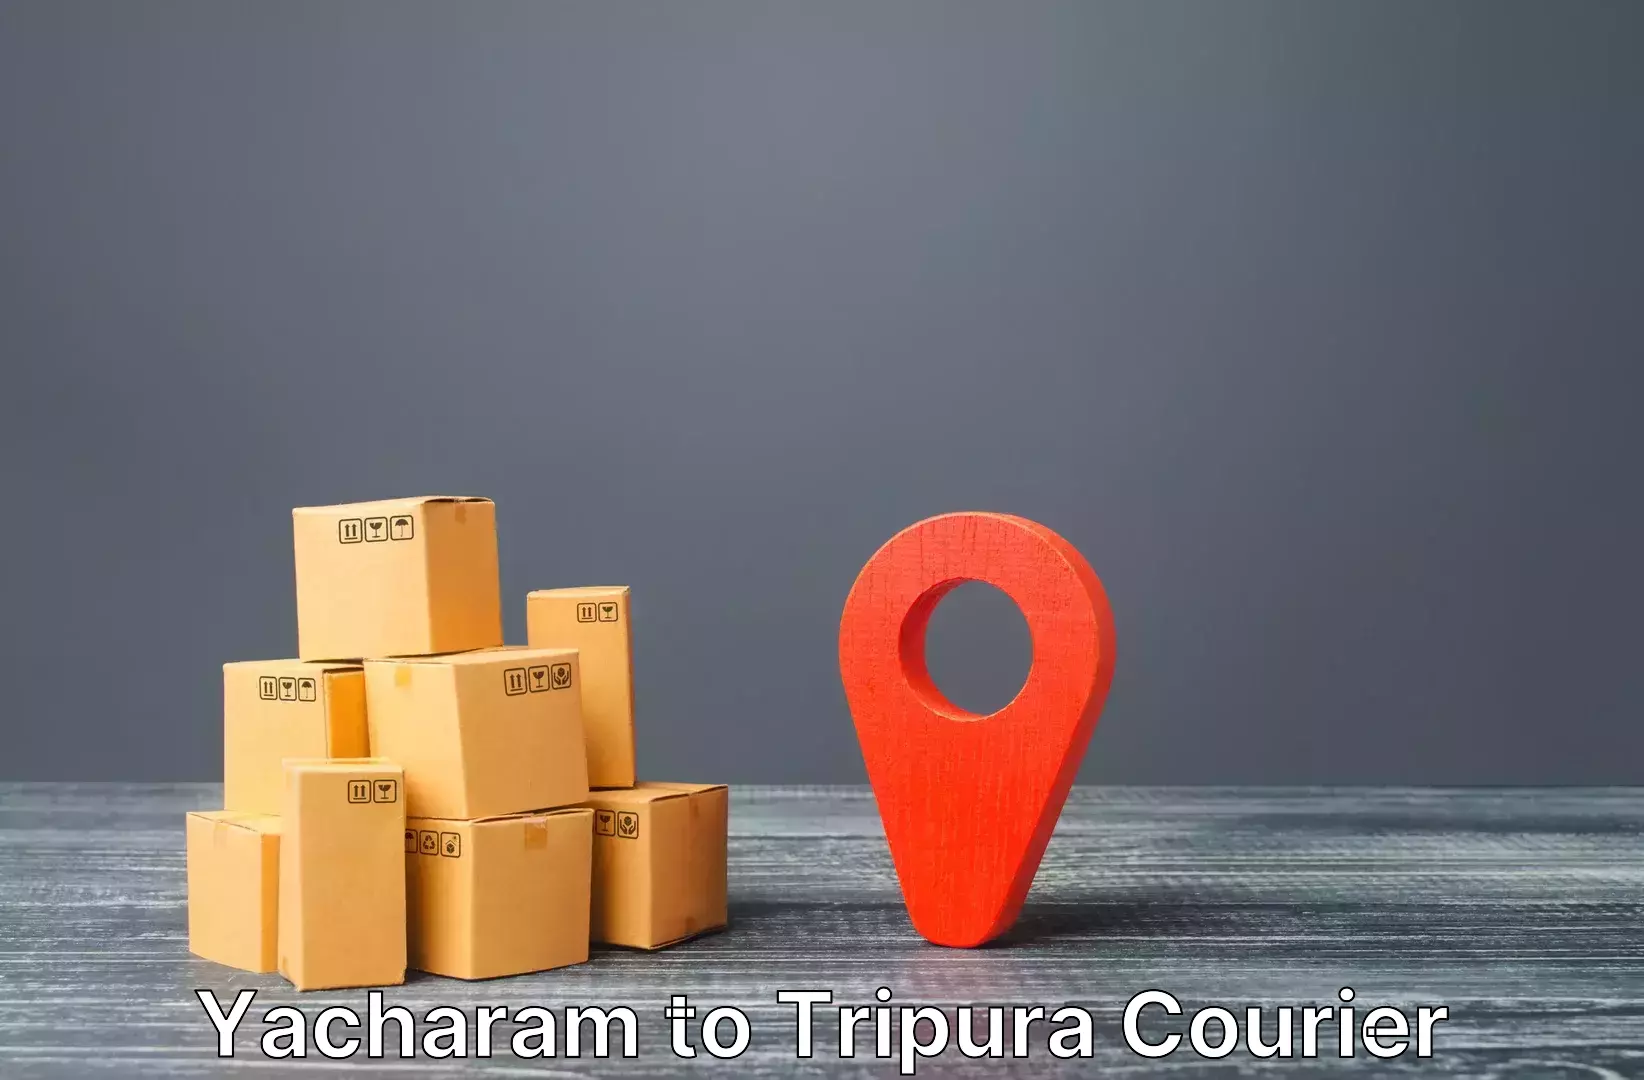 Personalized luggage shipping Yacharam to West Tripura